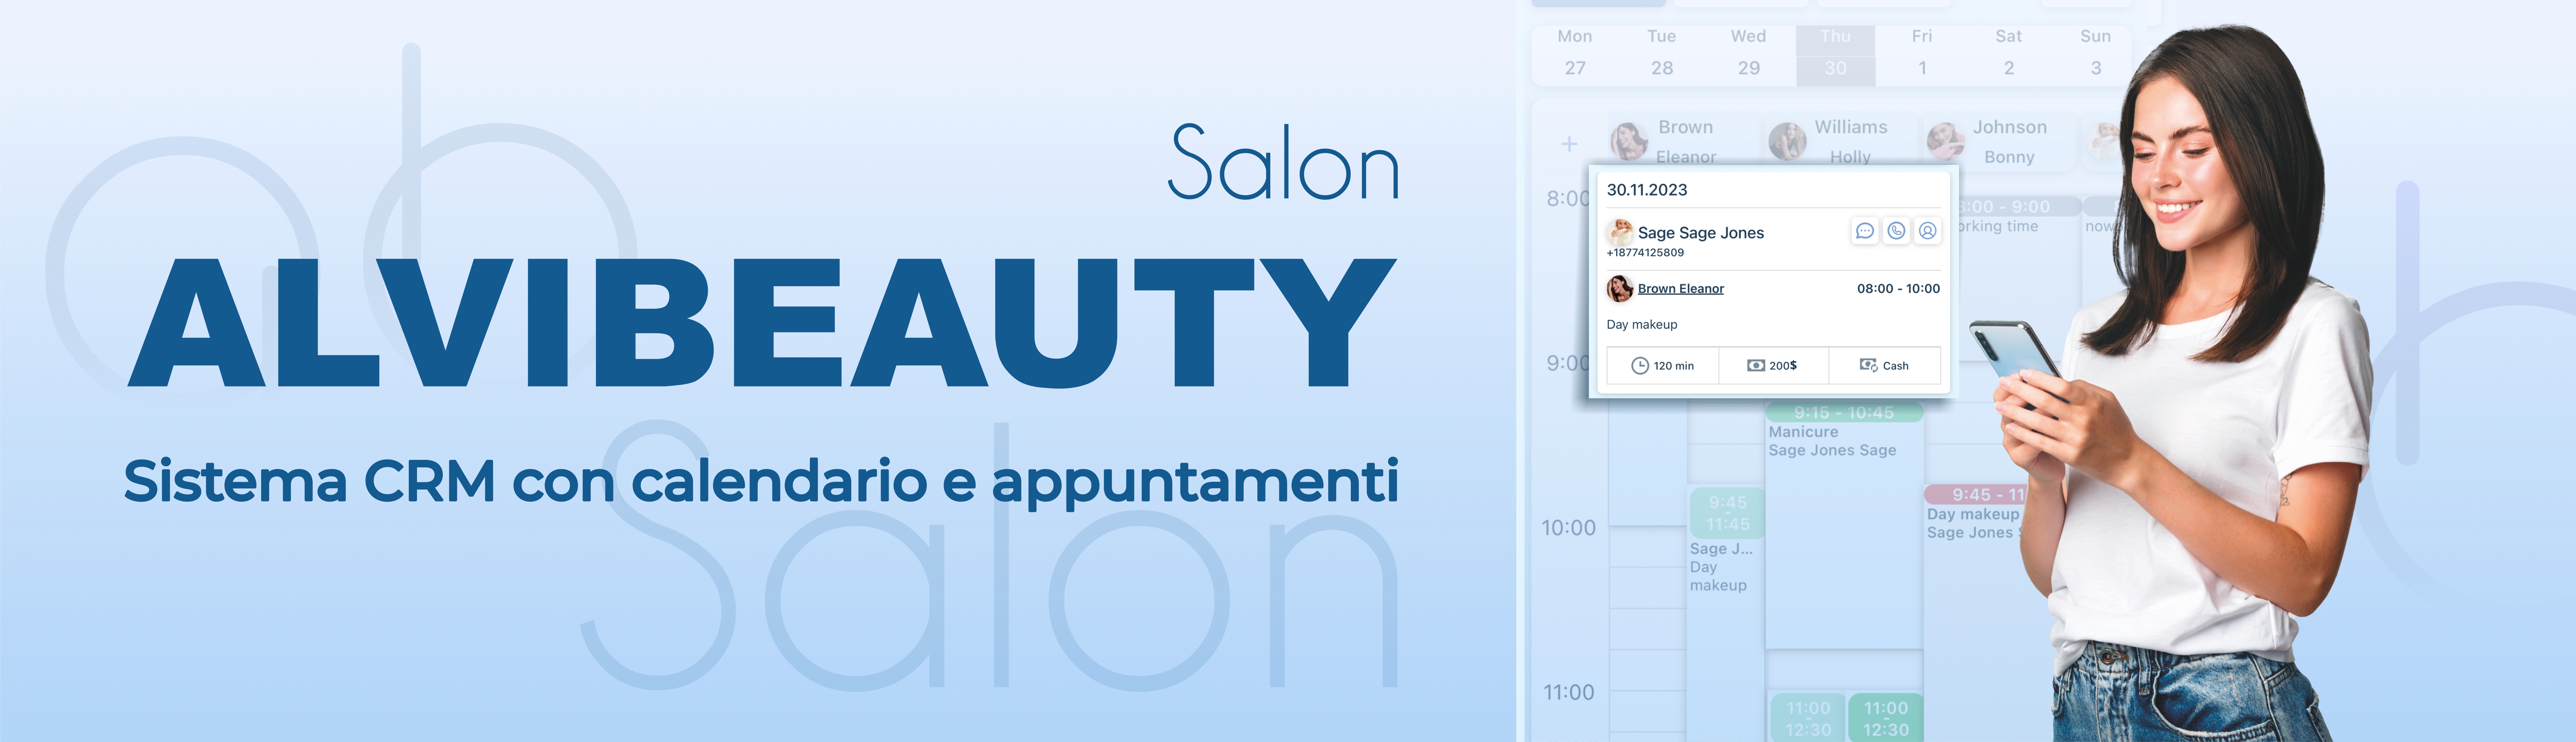 Il sistema CRM per saloni di bellezza e maestri di bellezza AlviBeauty Salon